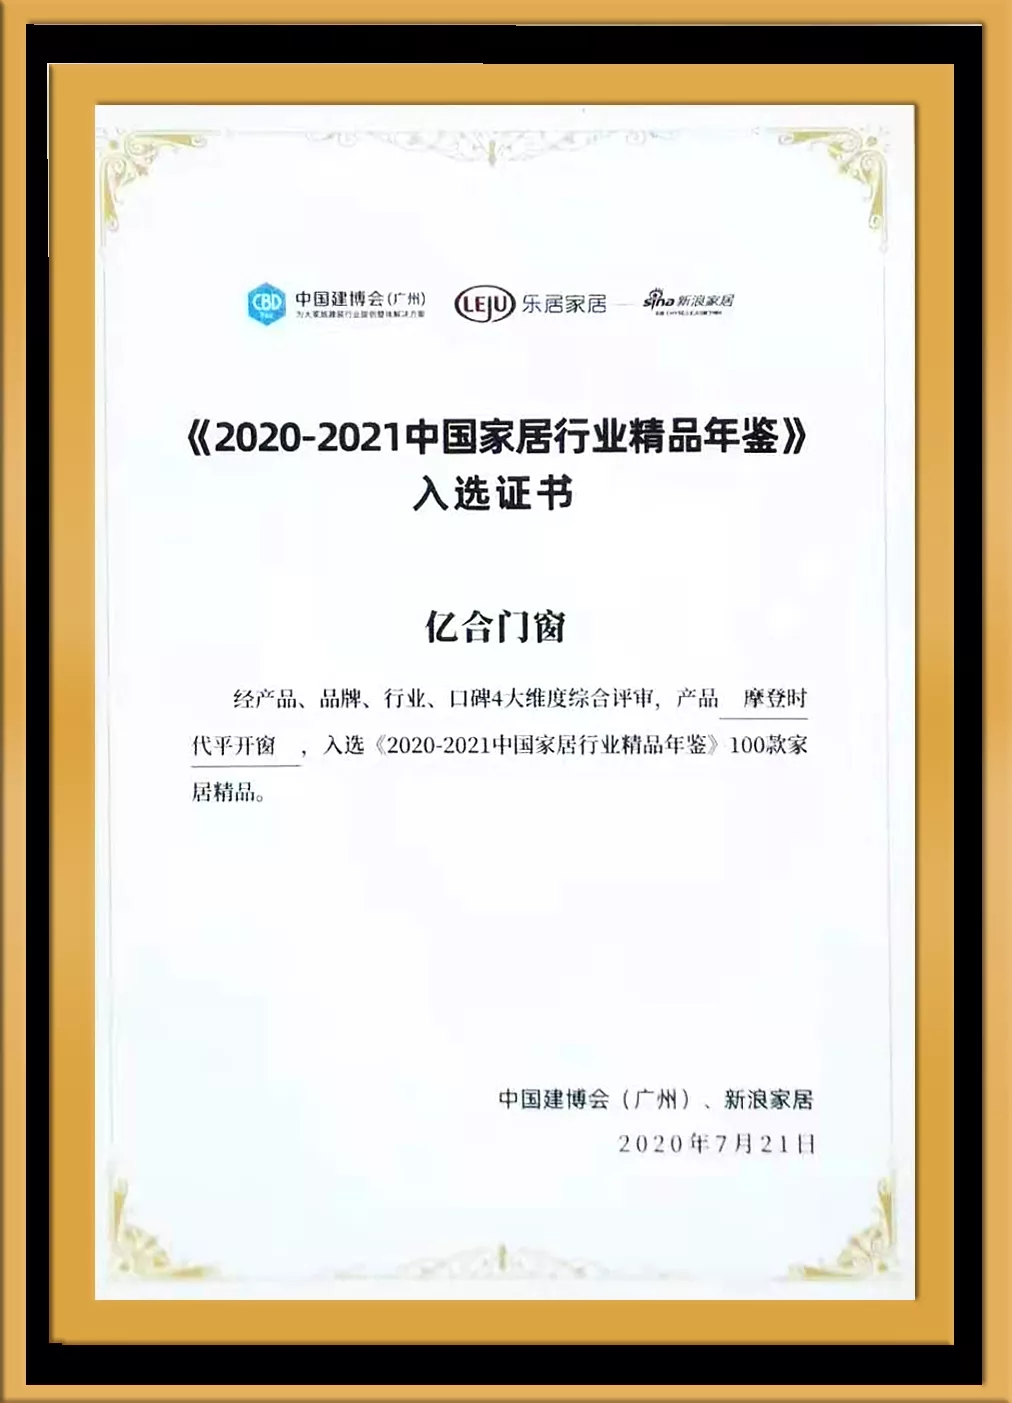 2020-2021中国家居行业精品年鉴